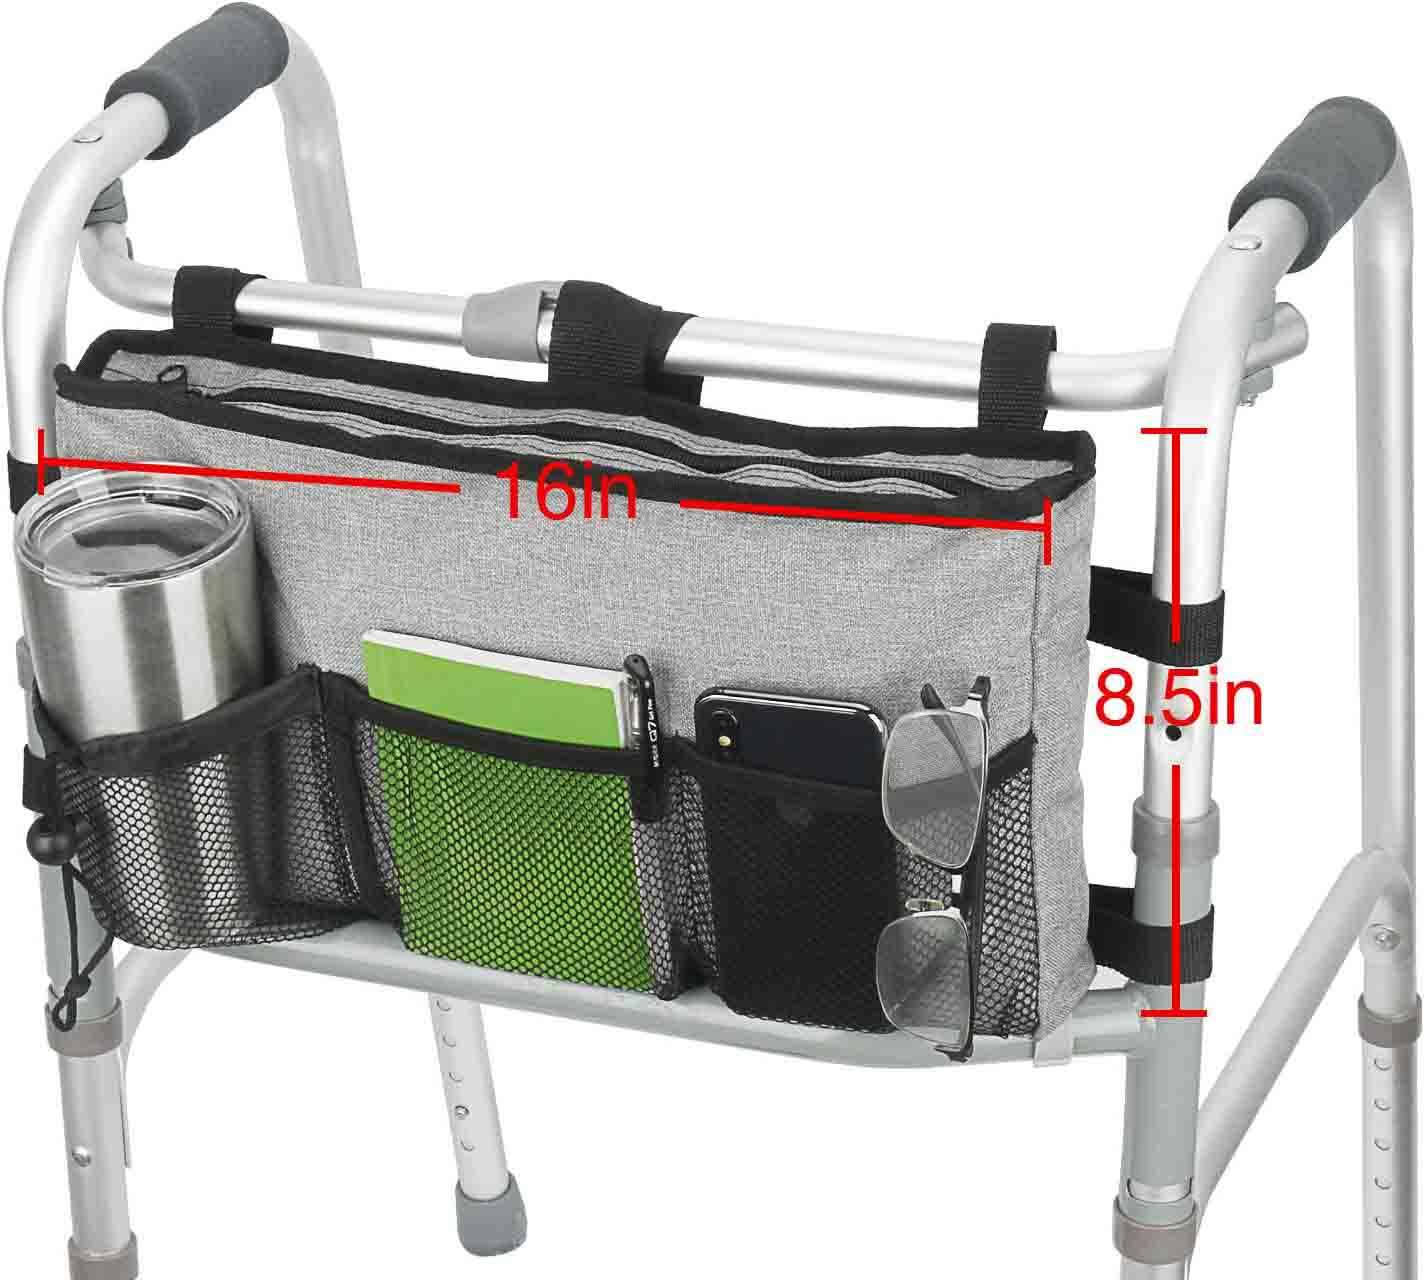 Bolsa de almacenamiento portátil para andador, bolsa lateral de supermercado para silla de ruedas, bolsa organizadora de accesorios plegable con portavasos